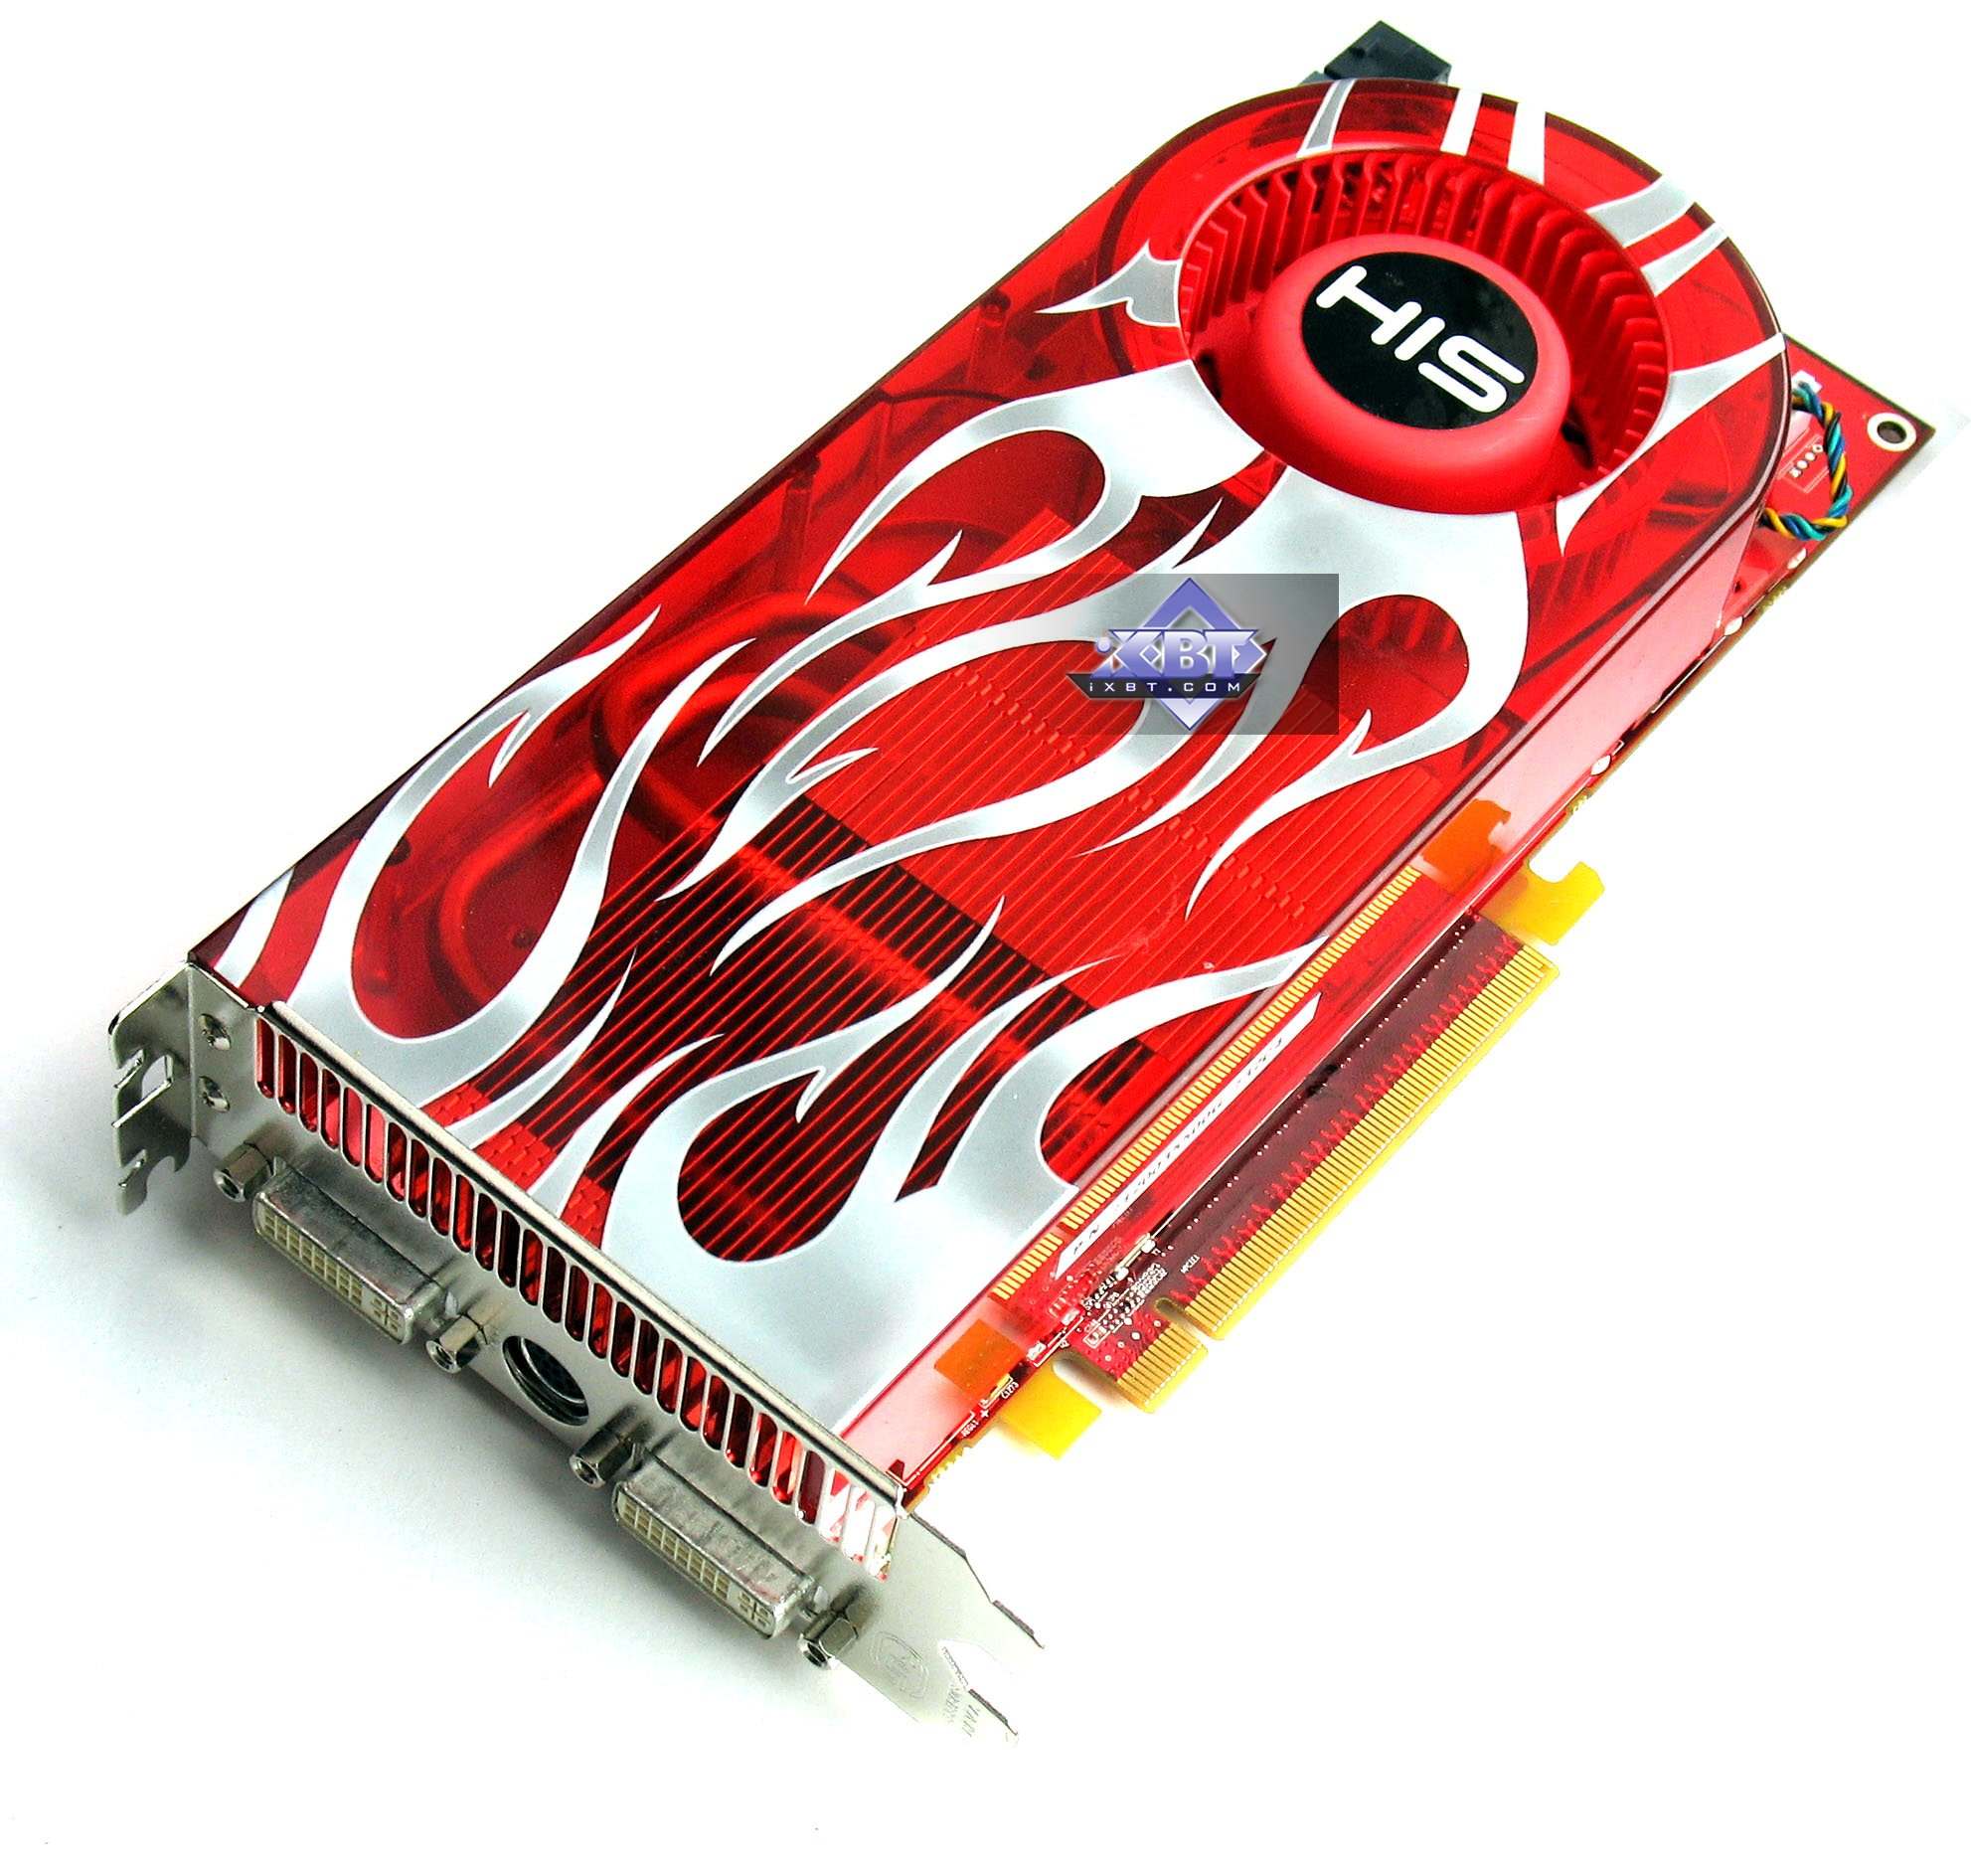 AMD/ATI DirectX 10 Series: RADEON HD 2900 XT (R600)